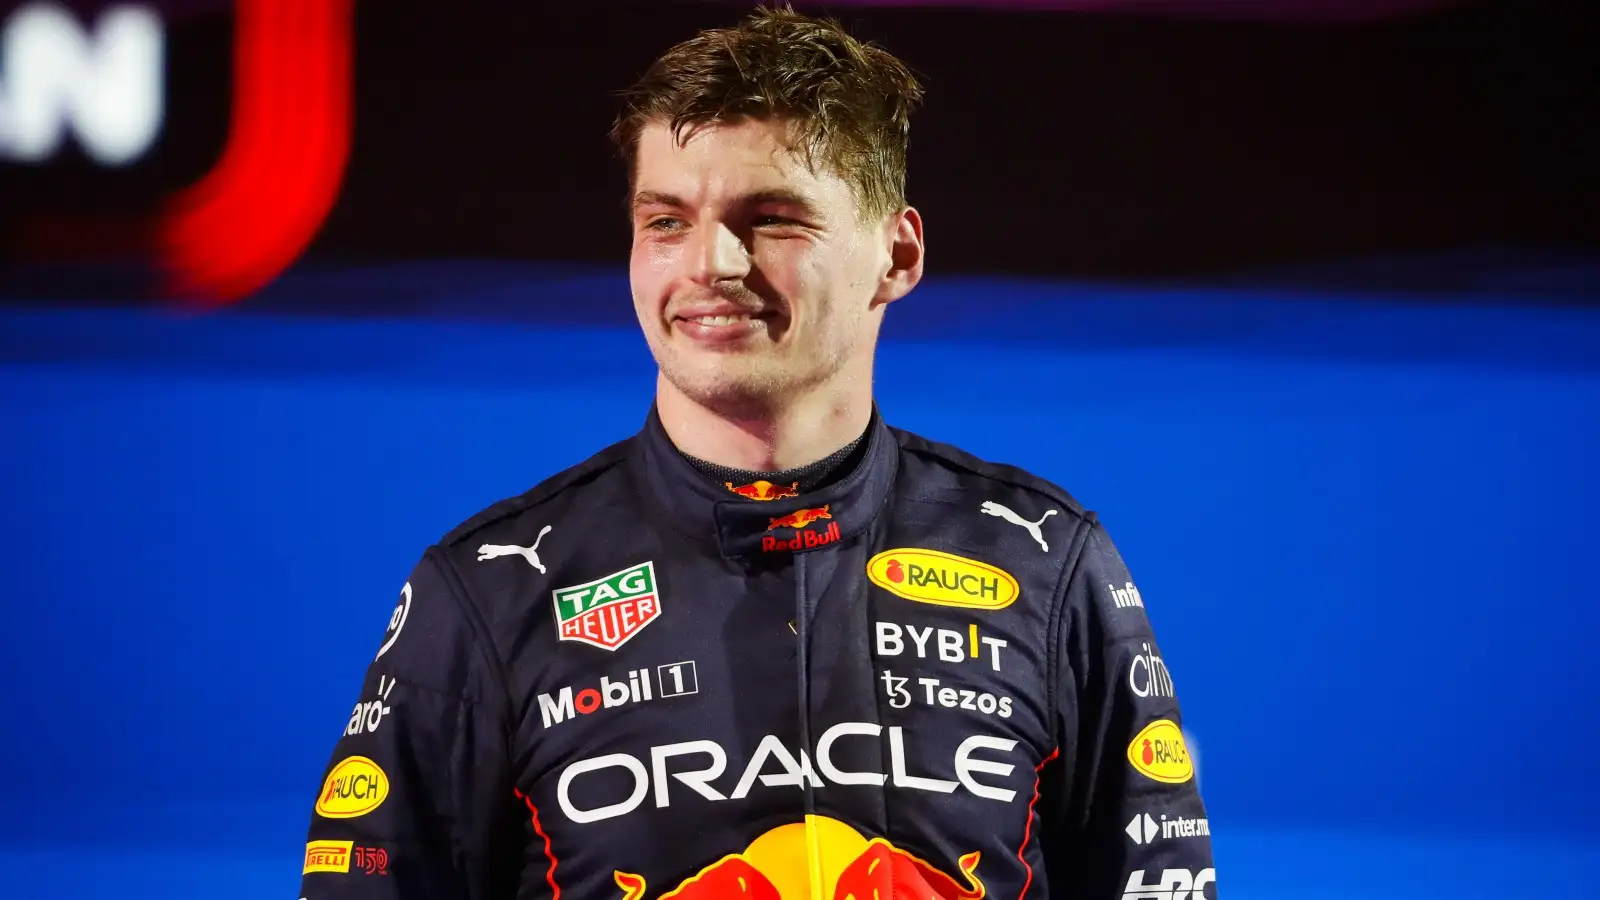 Race winner Max Verstappen, Red Bull, smiling on the podium. Saudi Arabia March 2022.